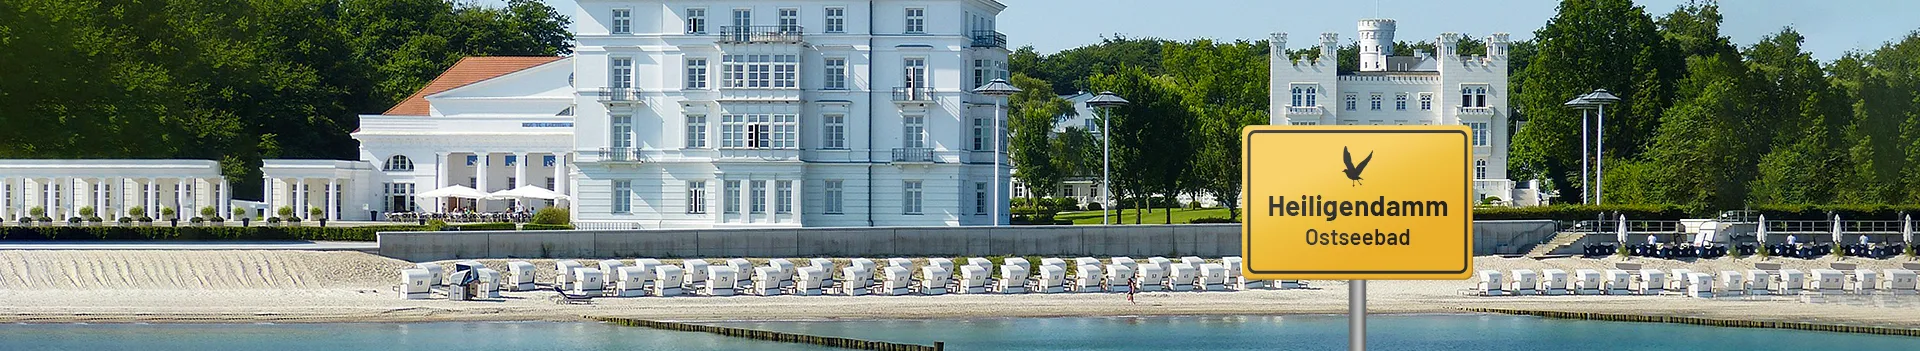 Ostseebad Heiligendamm – Blick auf den Strand und weiße Villen